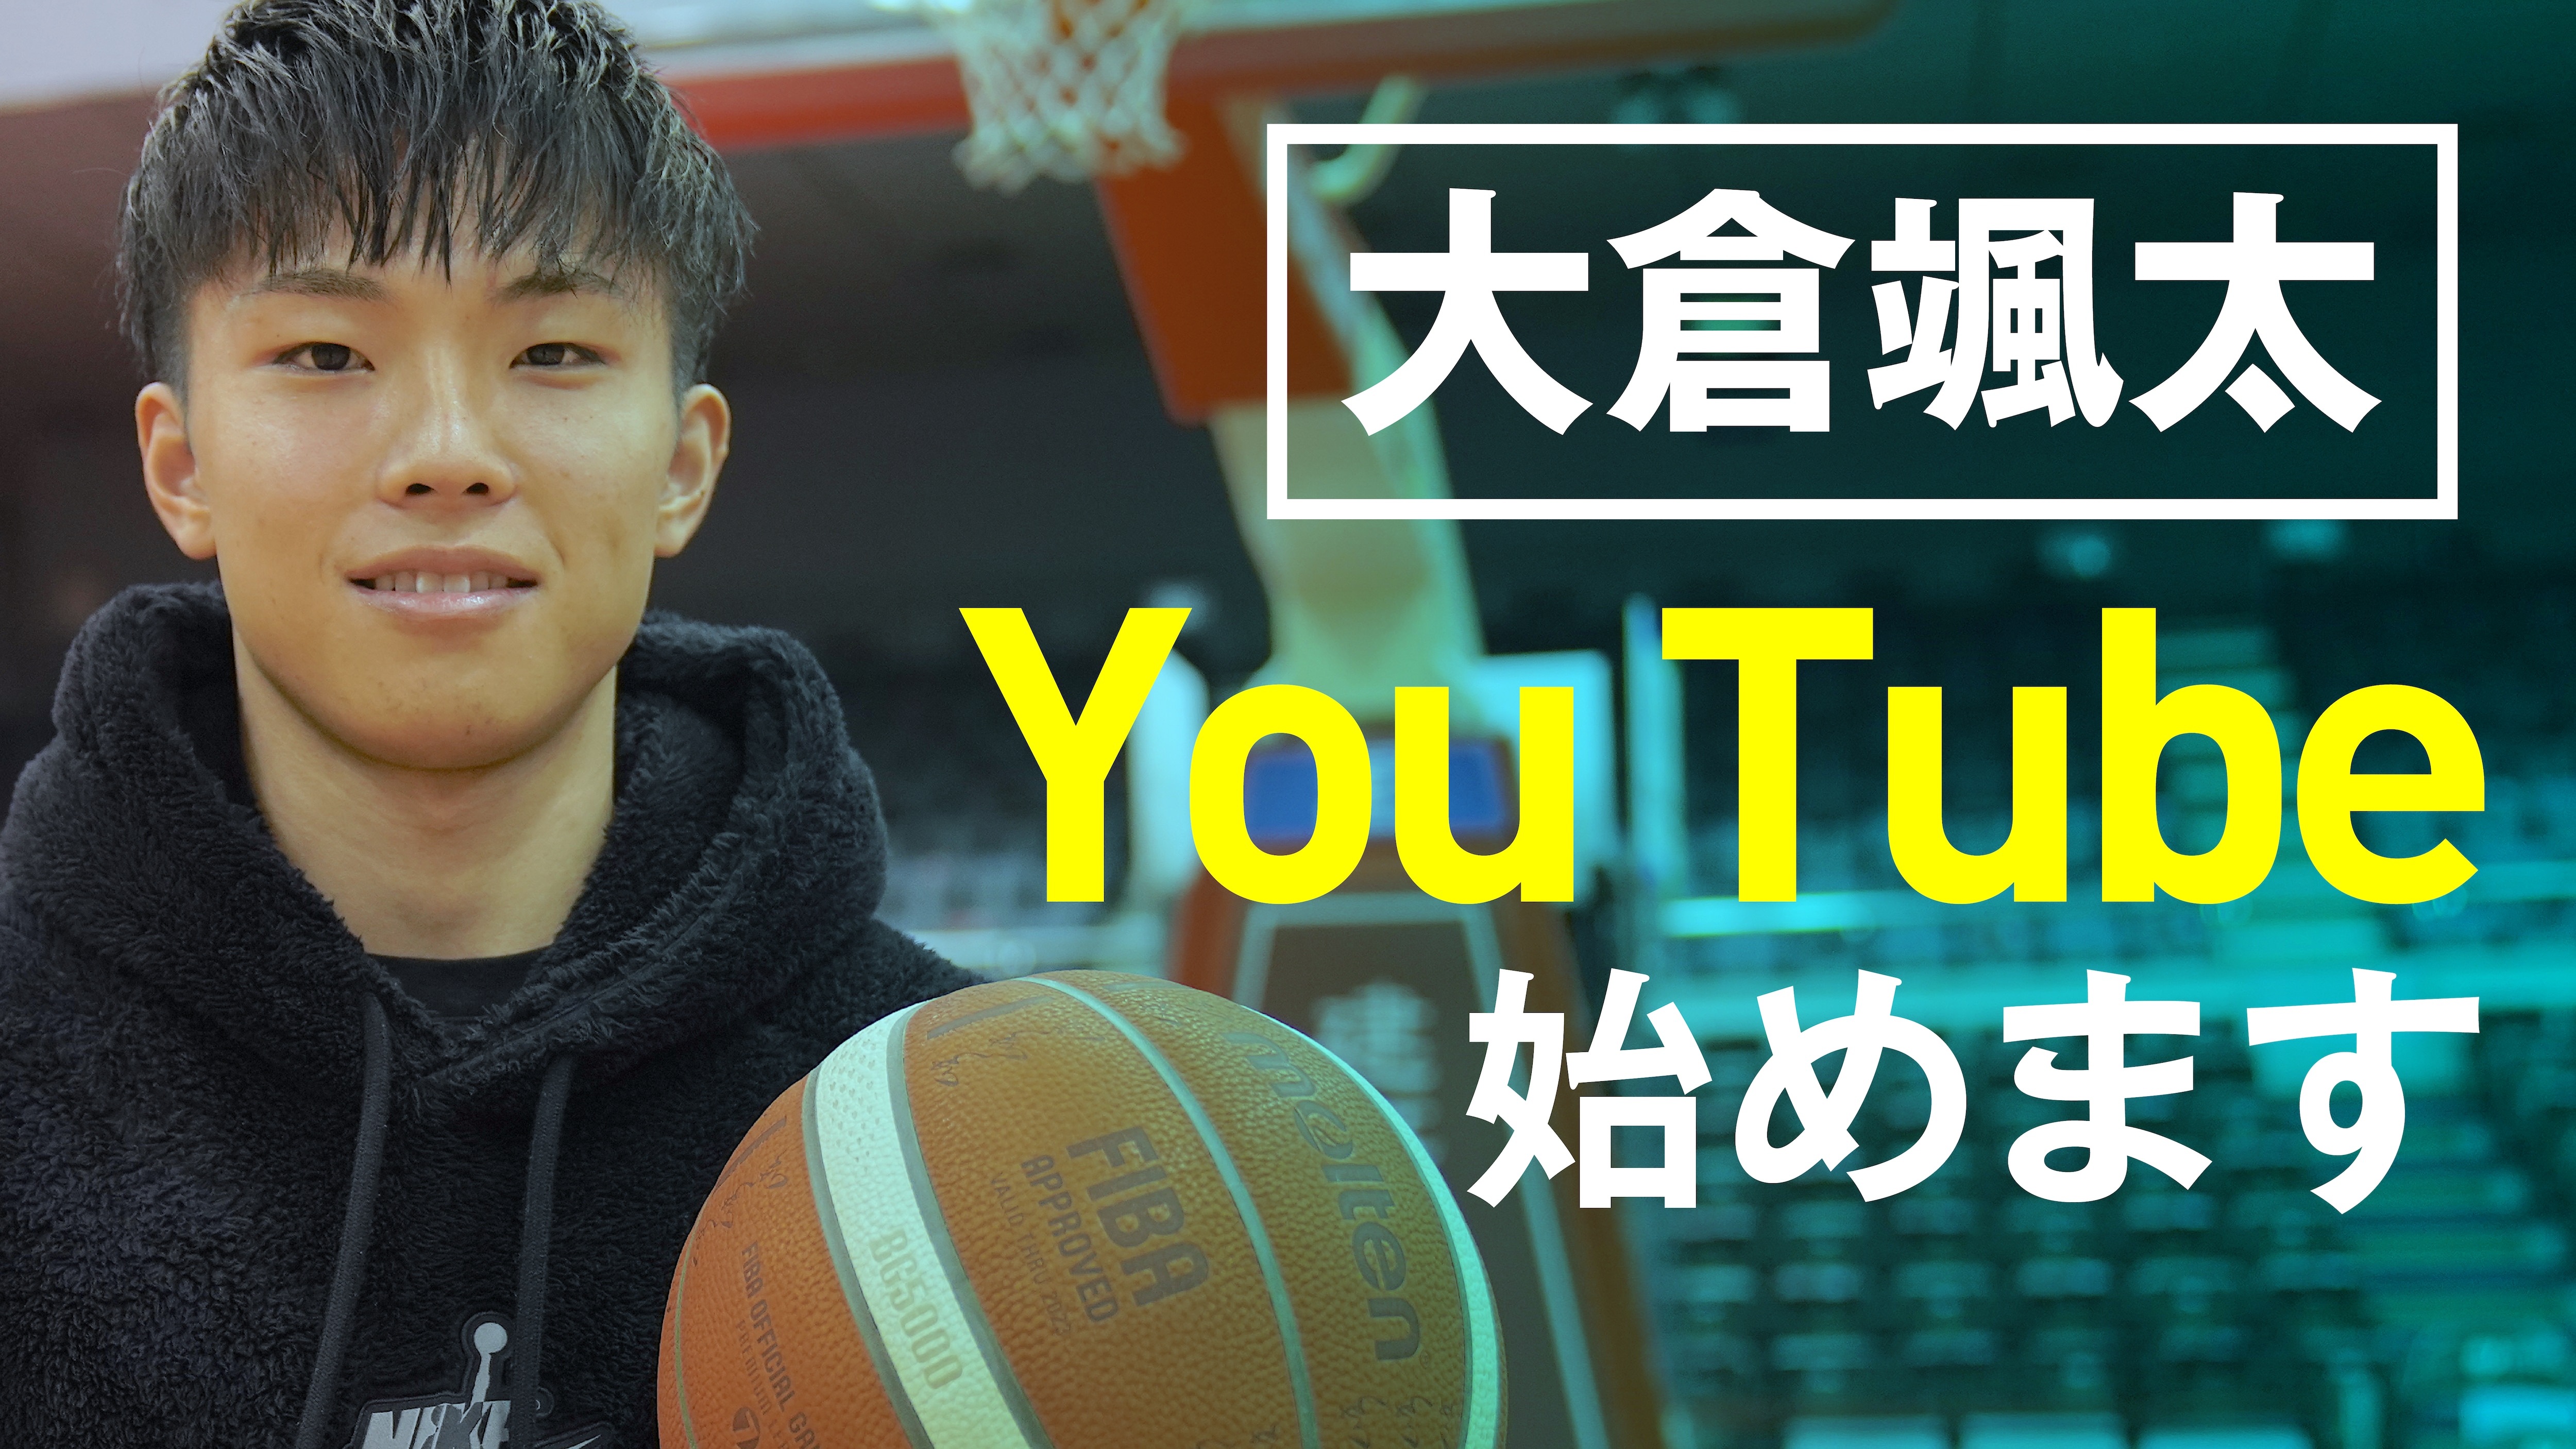 大学no1プレイヤー大倉颯太 公式youtubeチャンネルを開設 もっとバスケットボールの魅力を伝えて盛り上げたい エイベックス ビジネス ディベロップメント株式会社